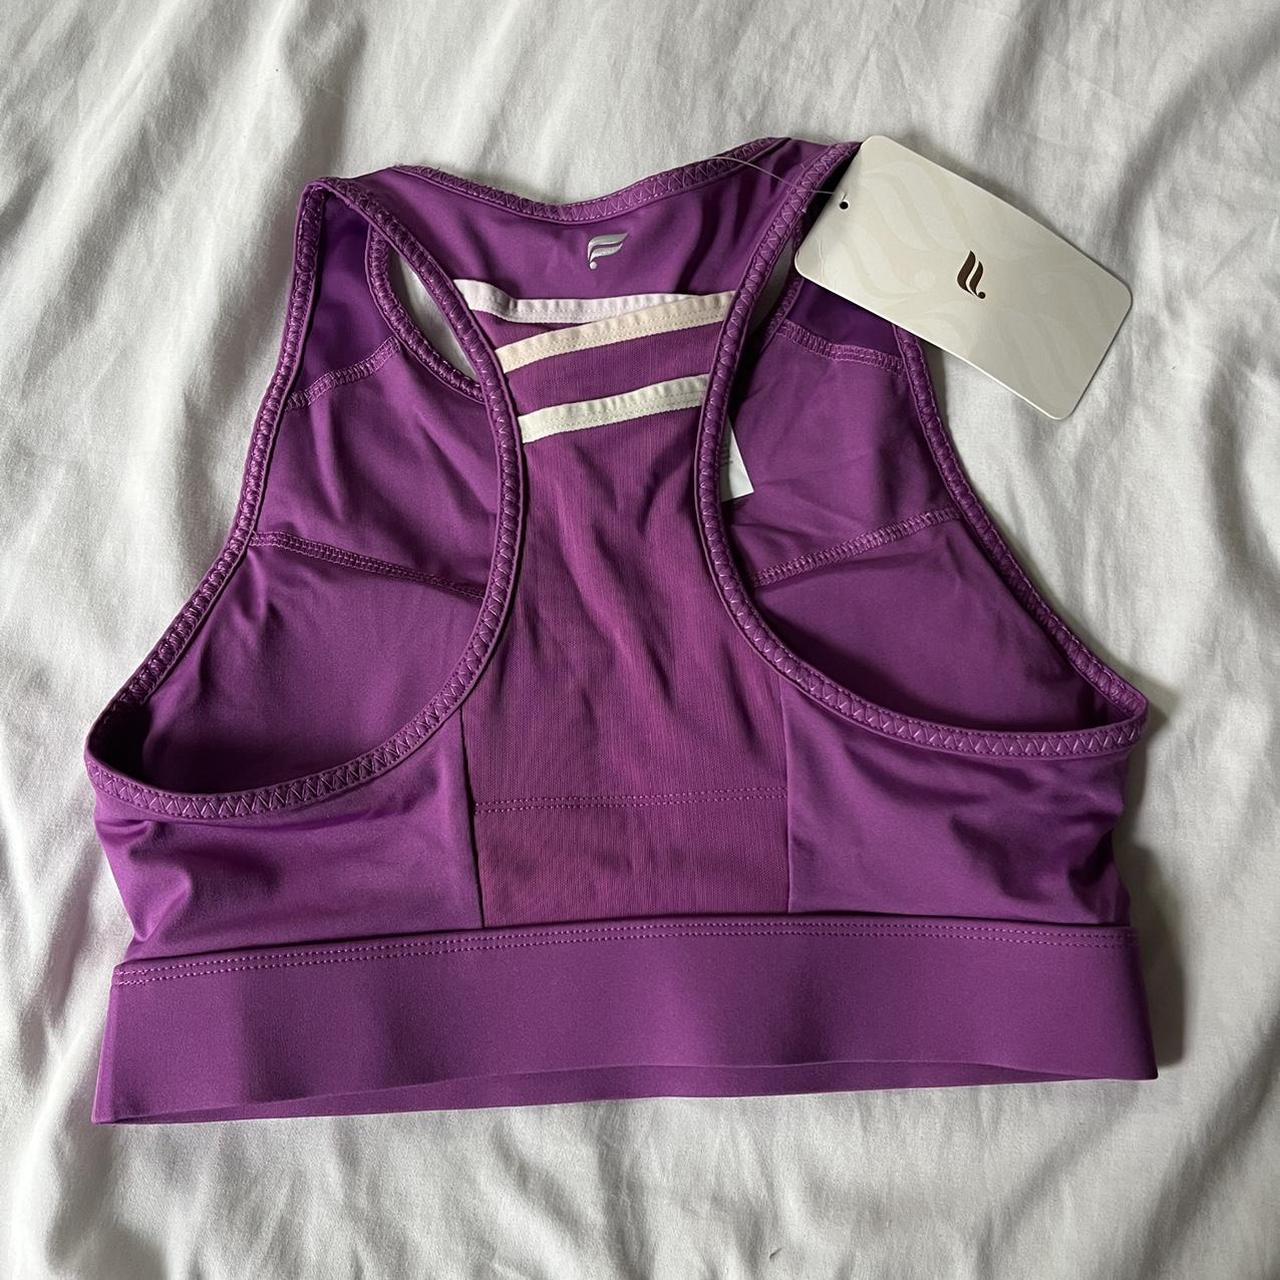 Fabletics Women's Purple and Pink Vest | Depop